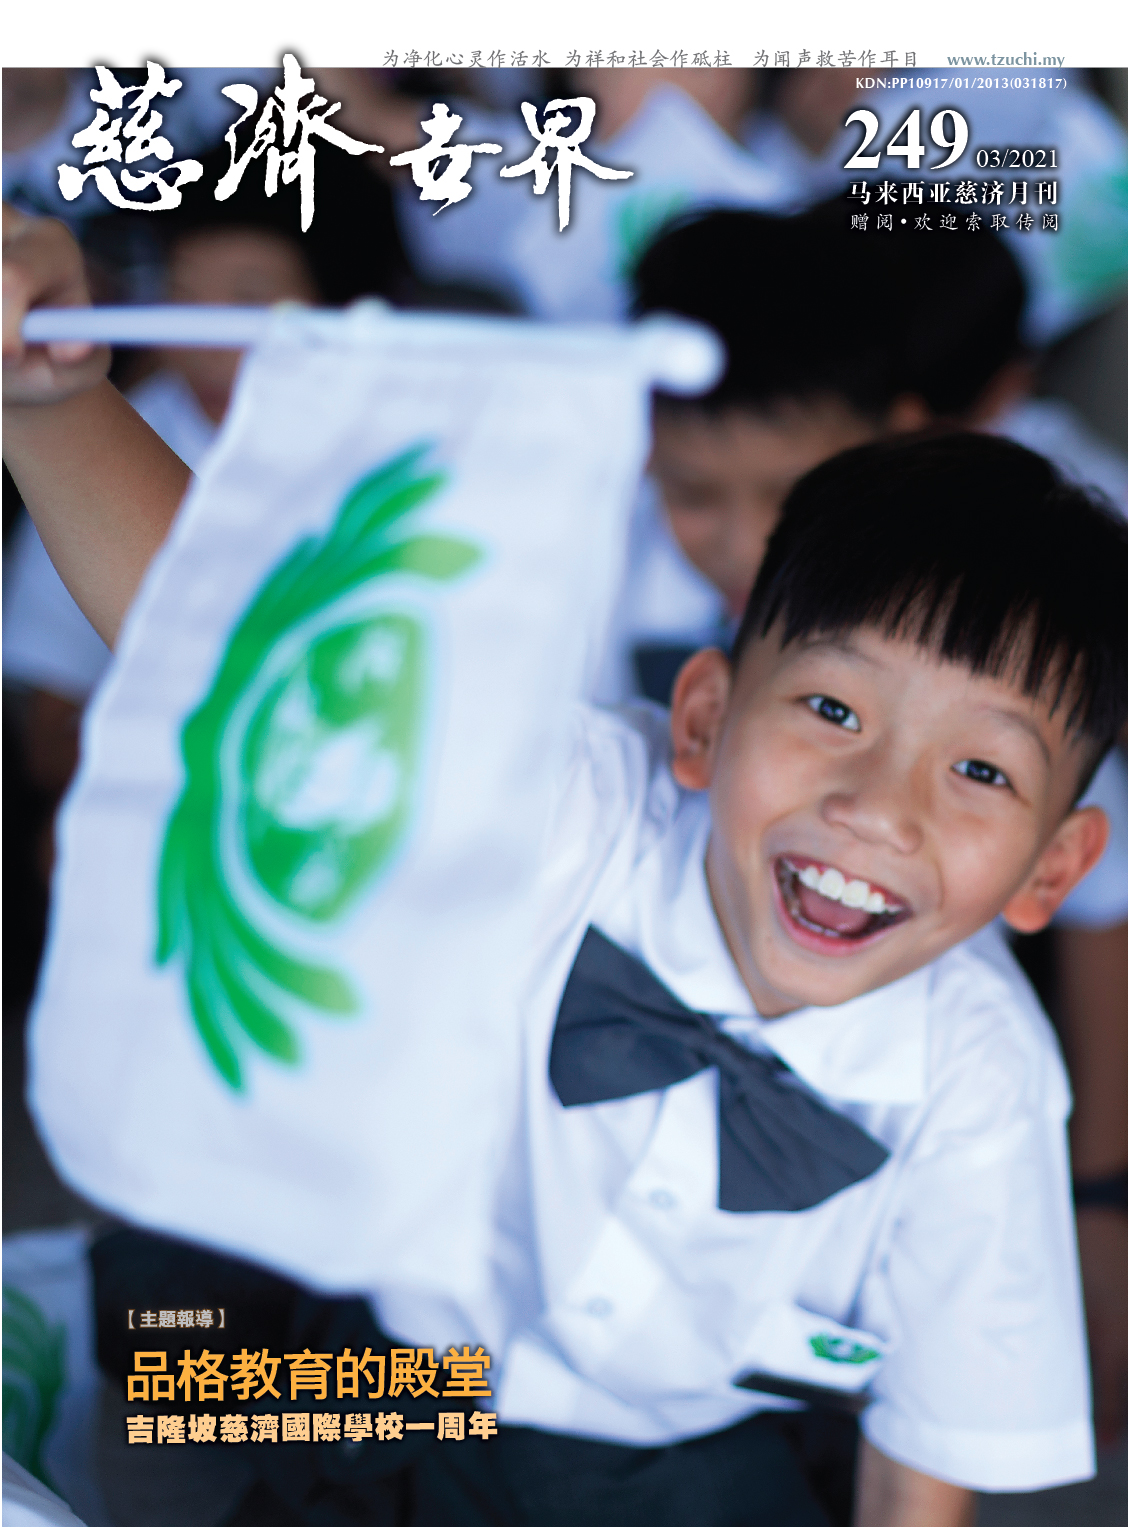 慈济世界 第249期 - 品格教育的殿堂  吉隆坡慈济国际学校一周年